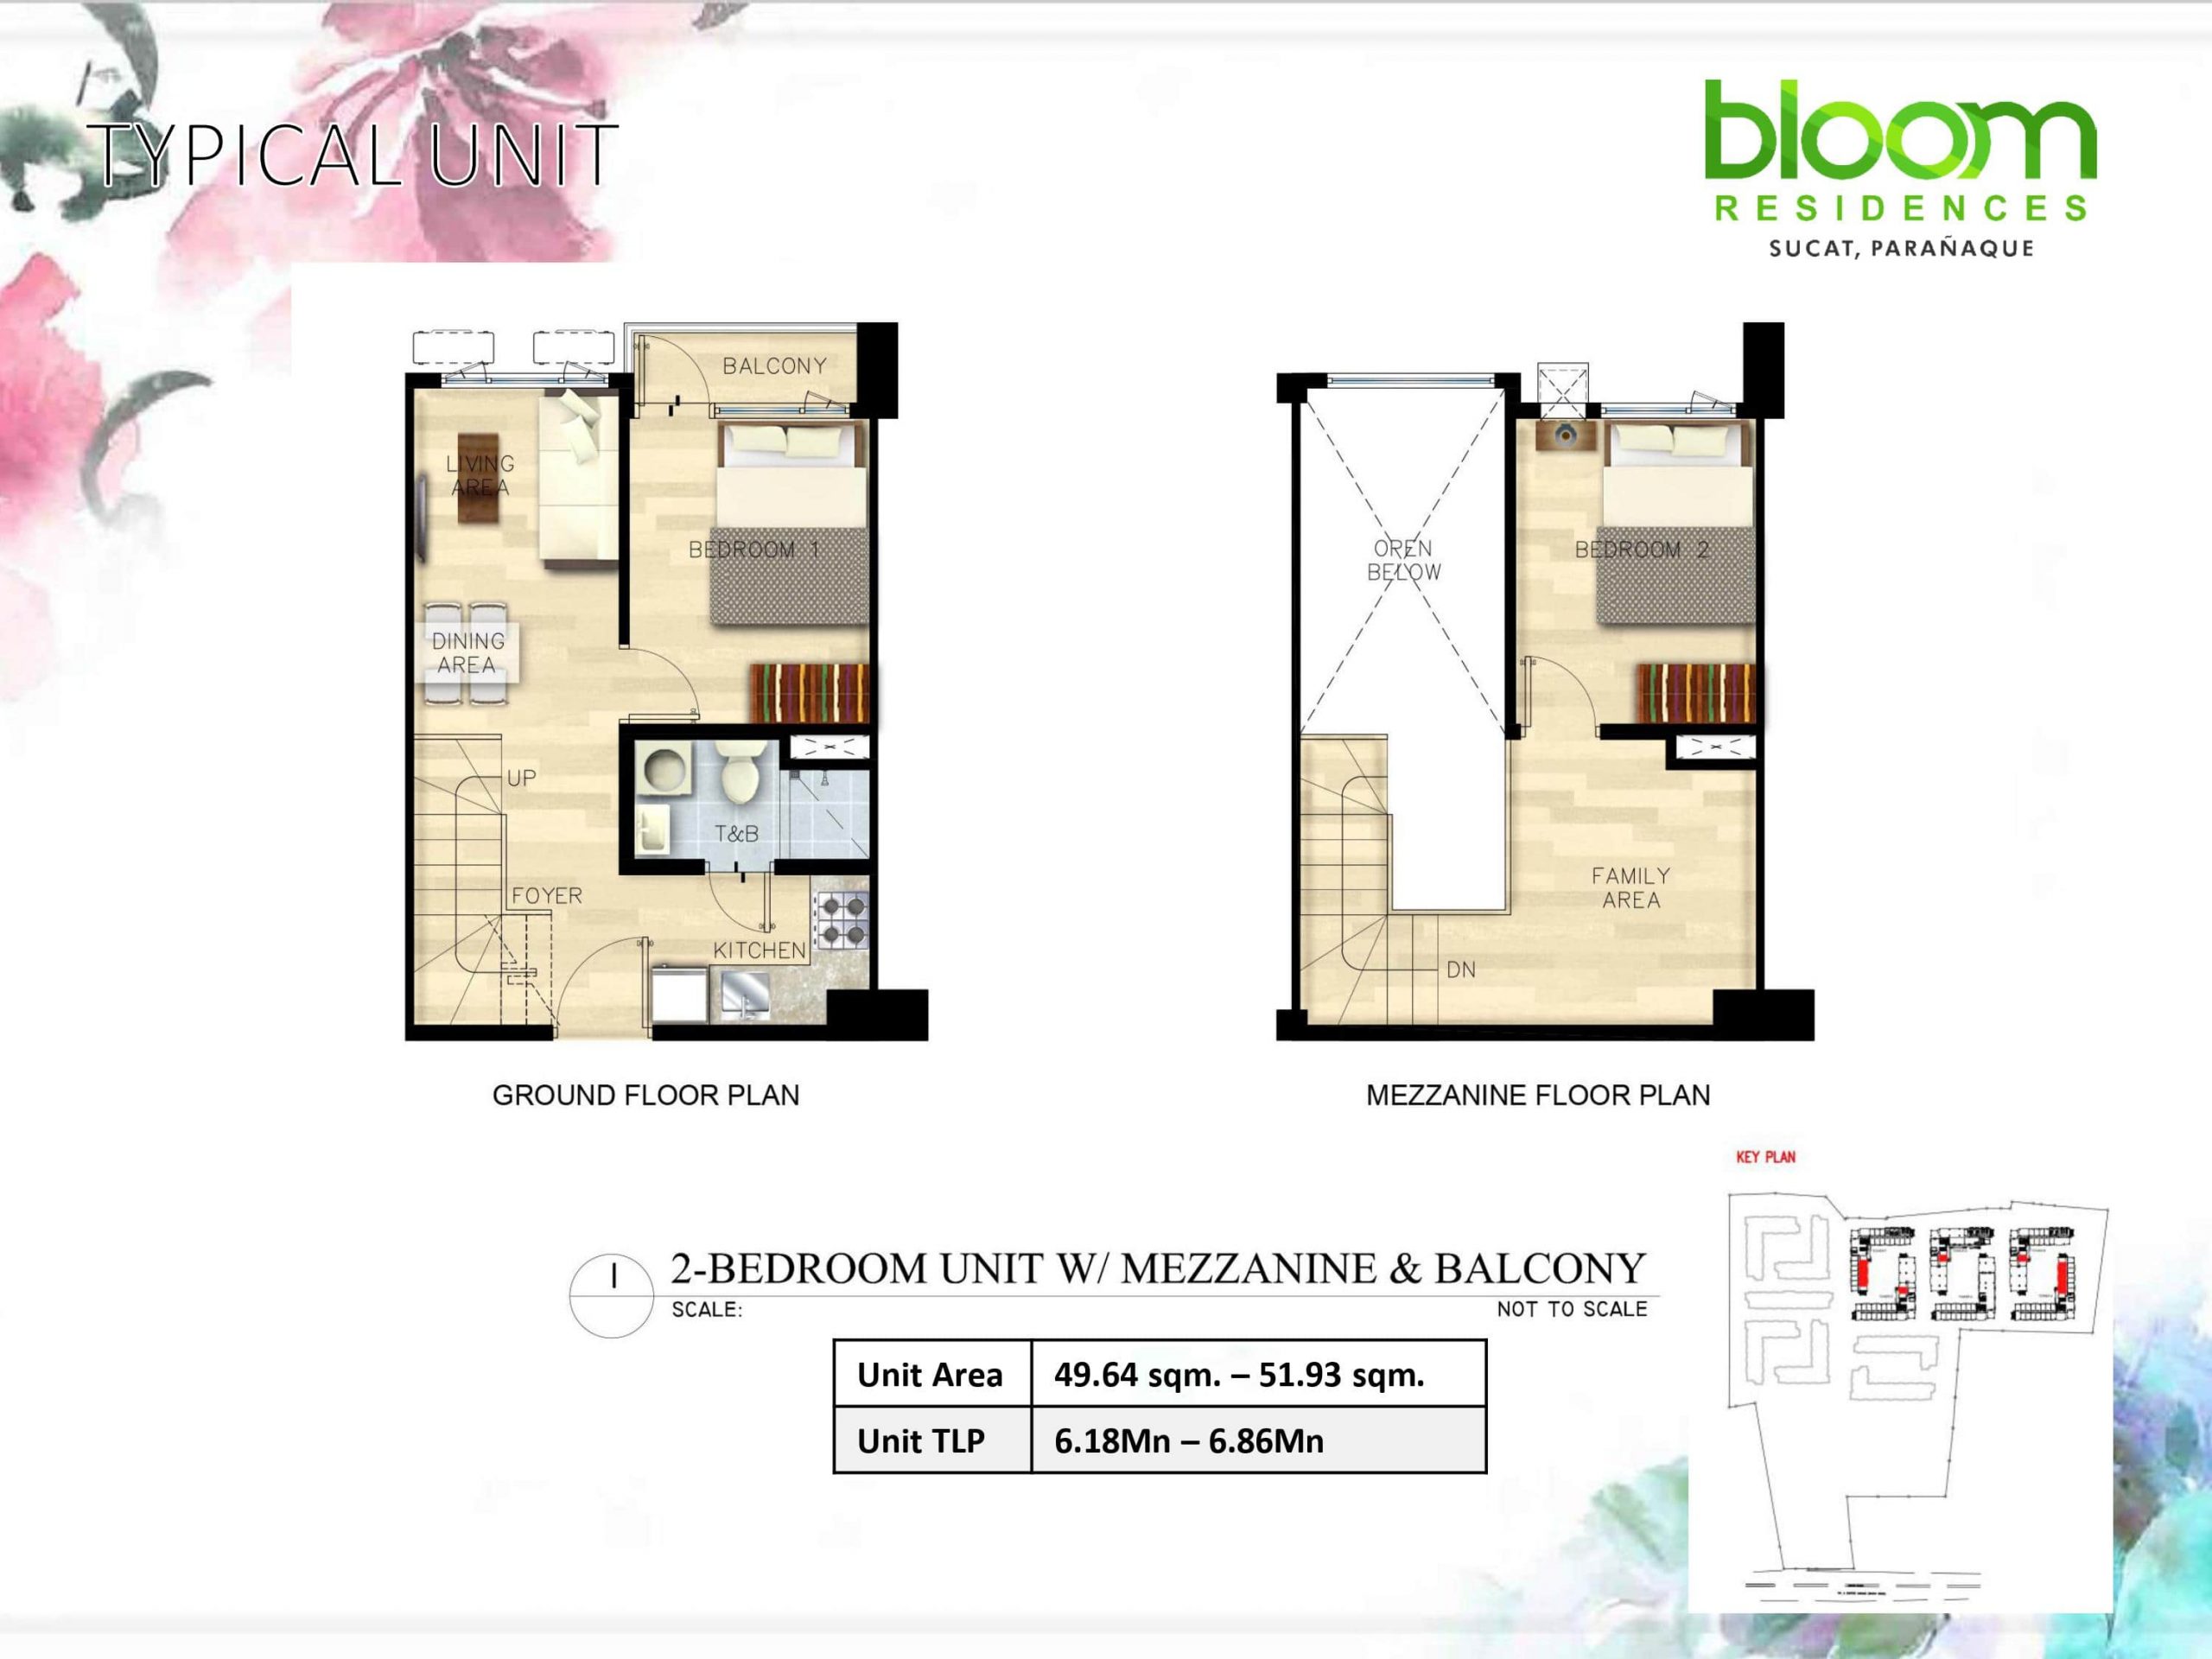 Two Bedroom Unit W/ Mezzanine & Balcony